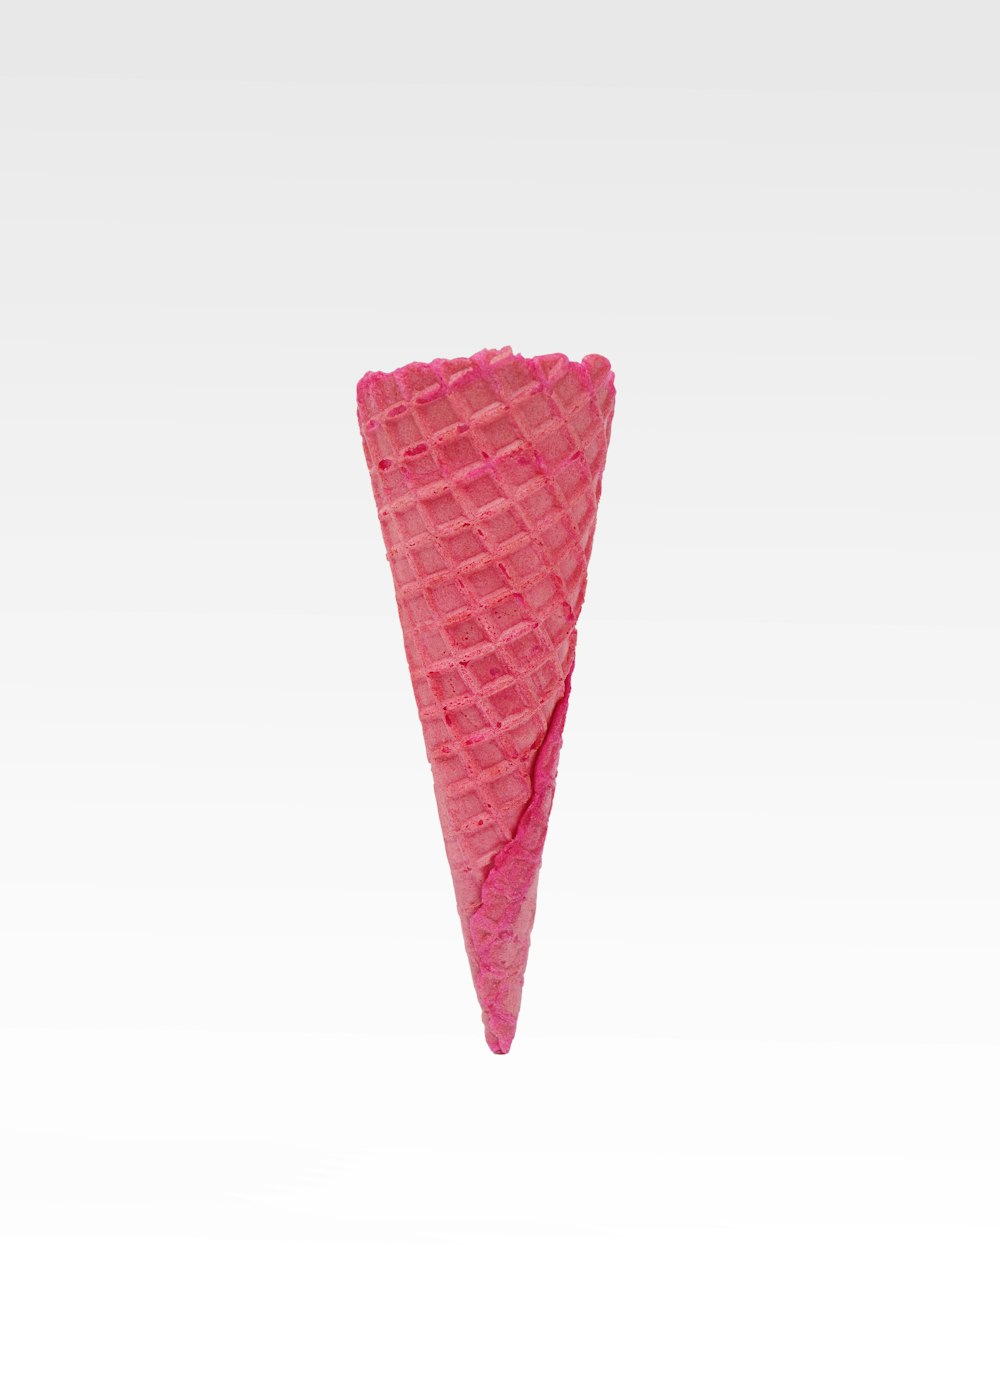 白い背景にピンクの円錐形のアイスクリーム